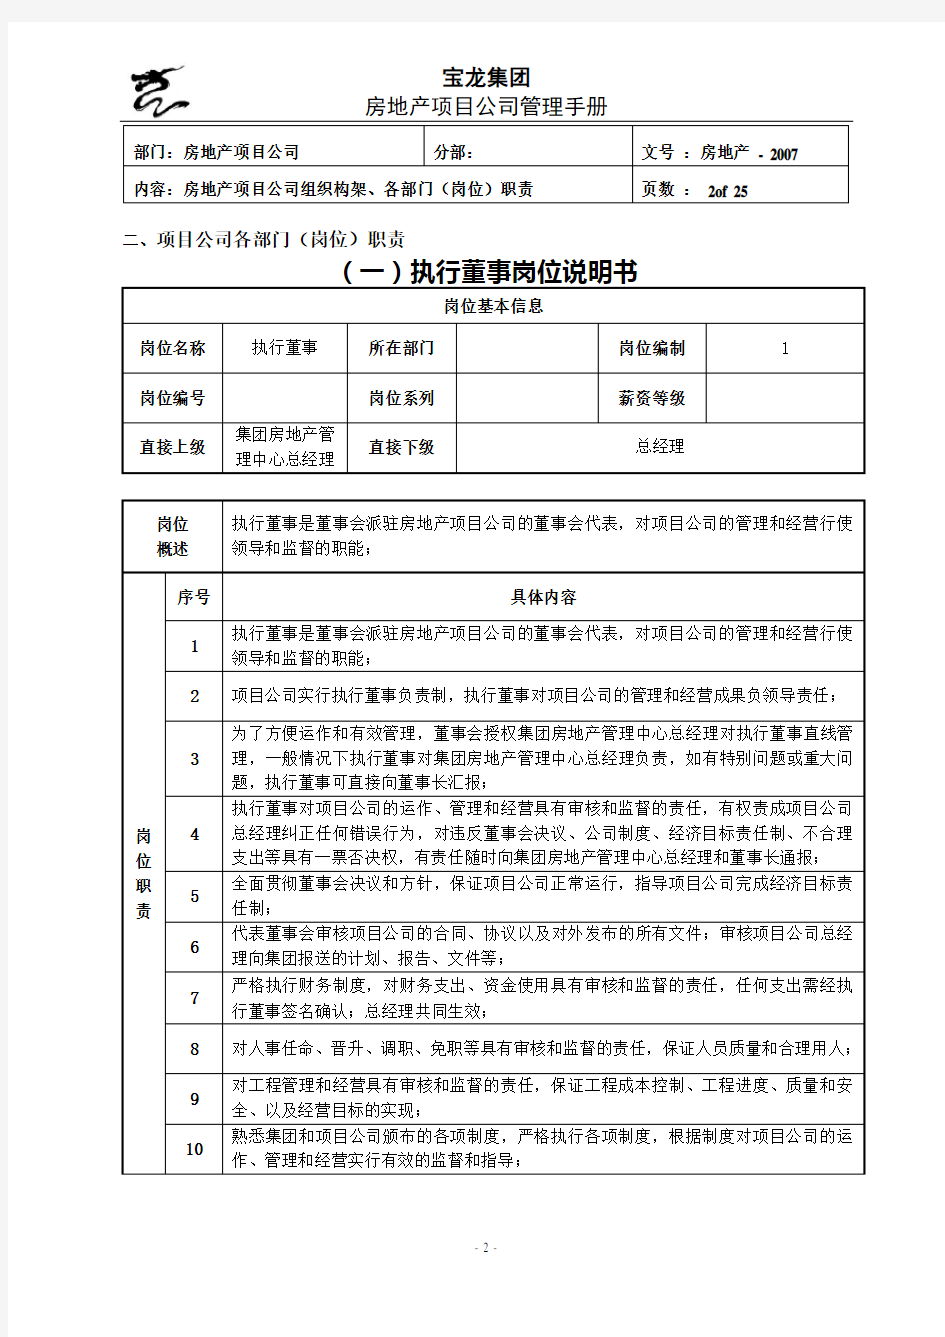 宝龙地产项目公司管理制度手册正文p1p141